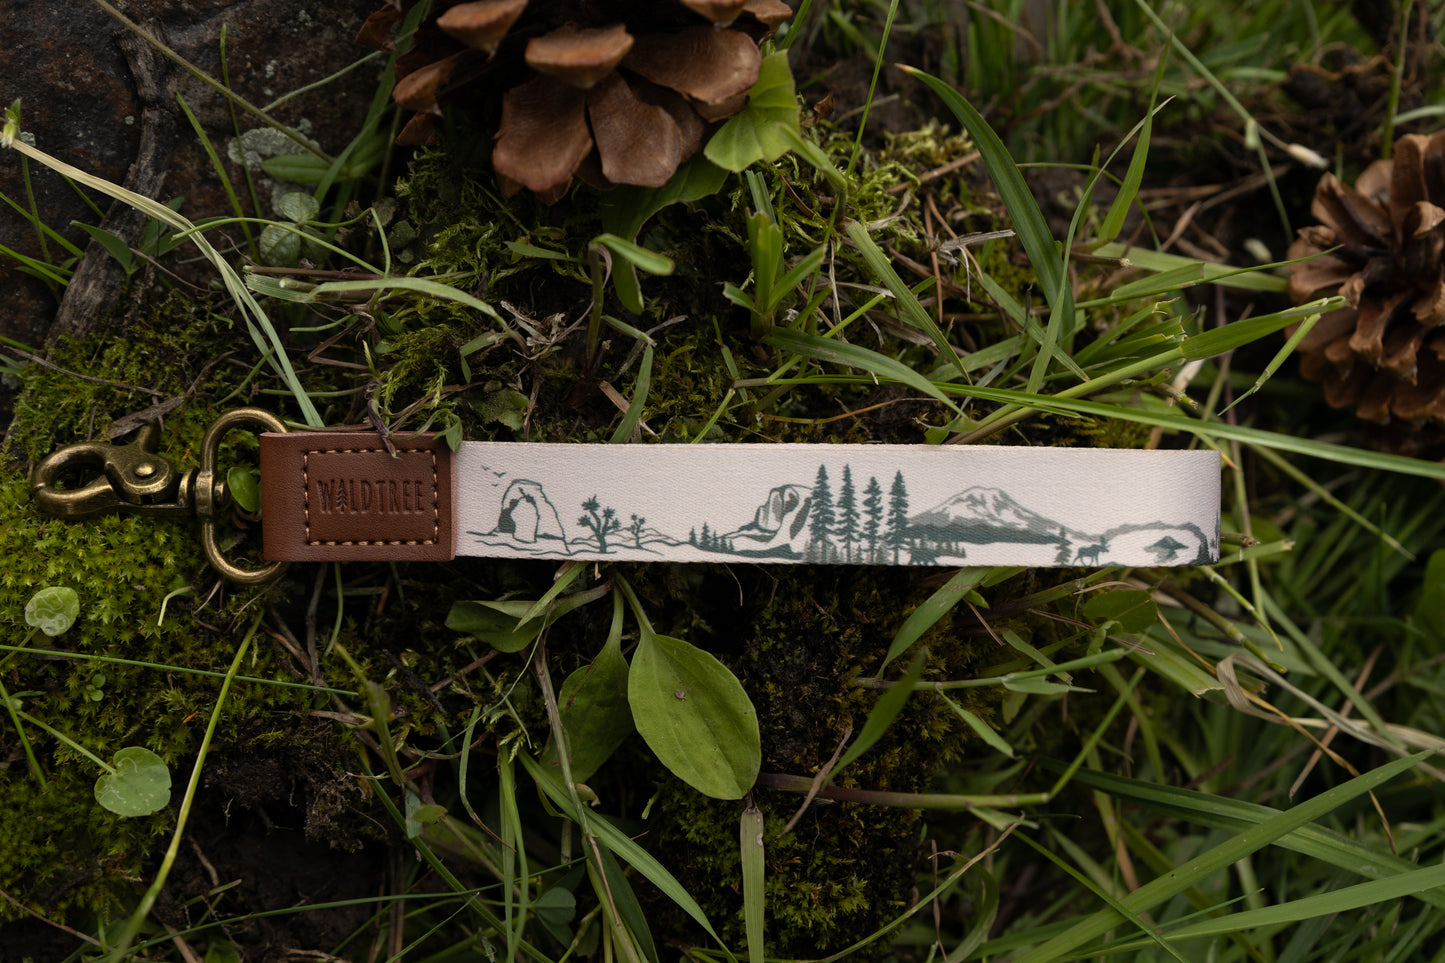       National-park-wristlet-keychain-wildtree  4472 × 2981px  national park wristlet keychain laying on forest floor